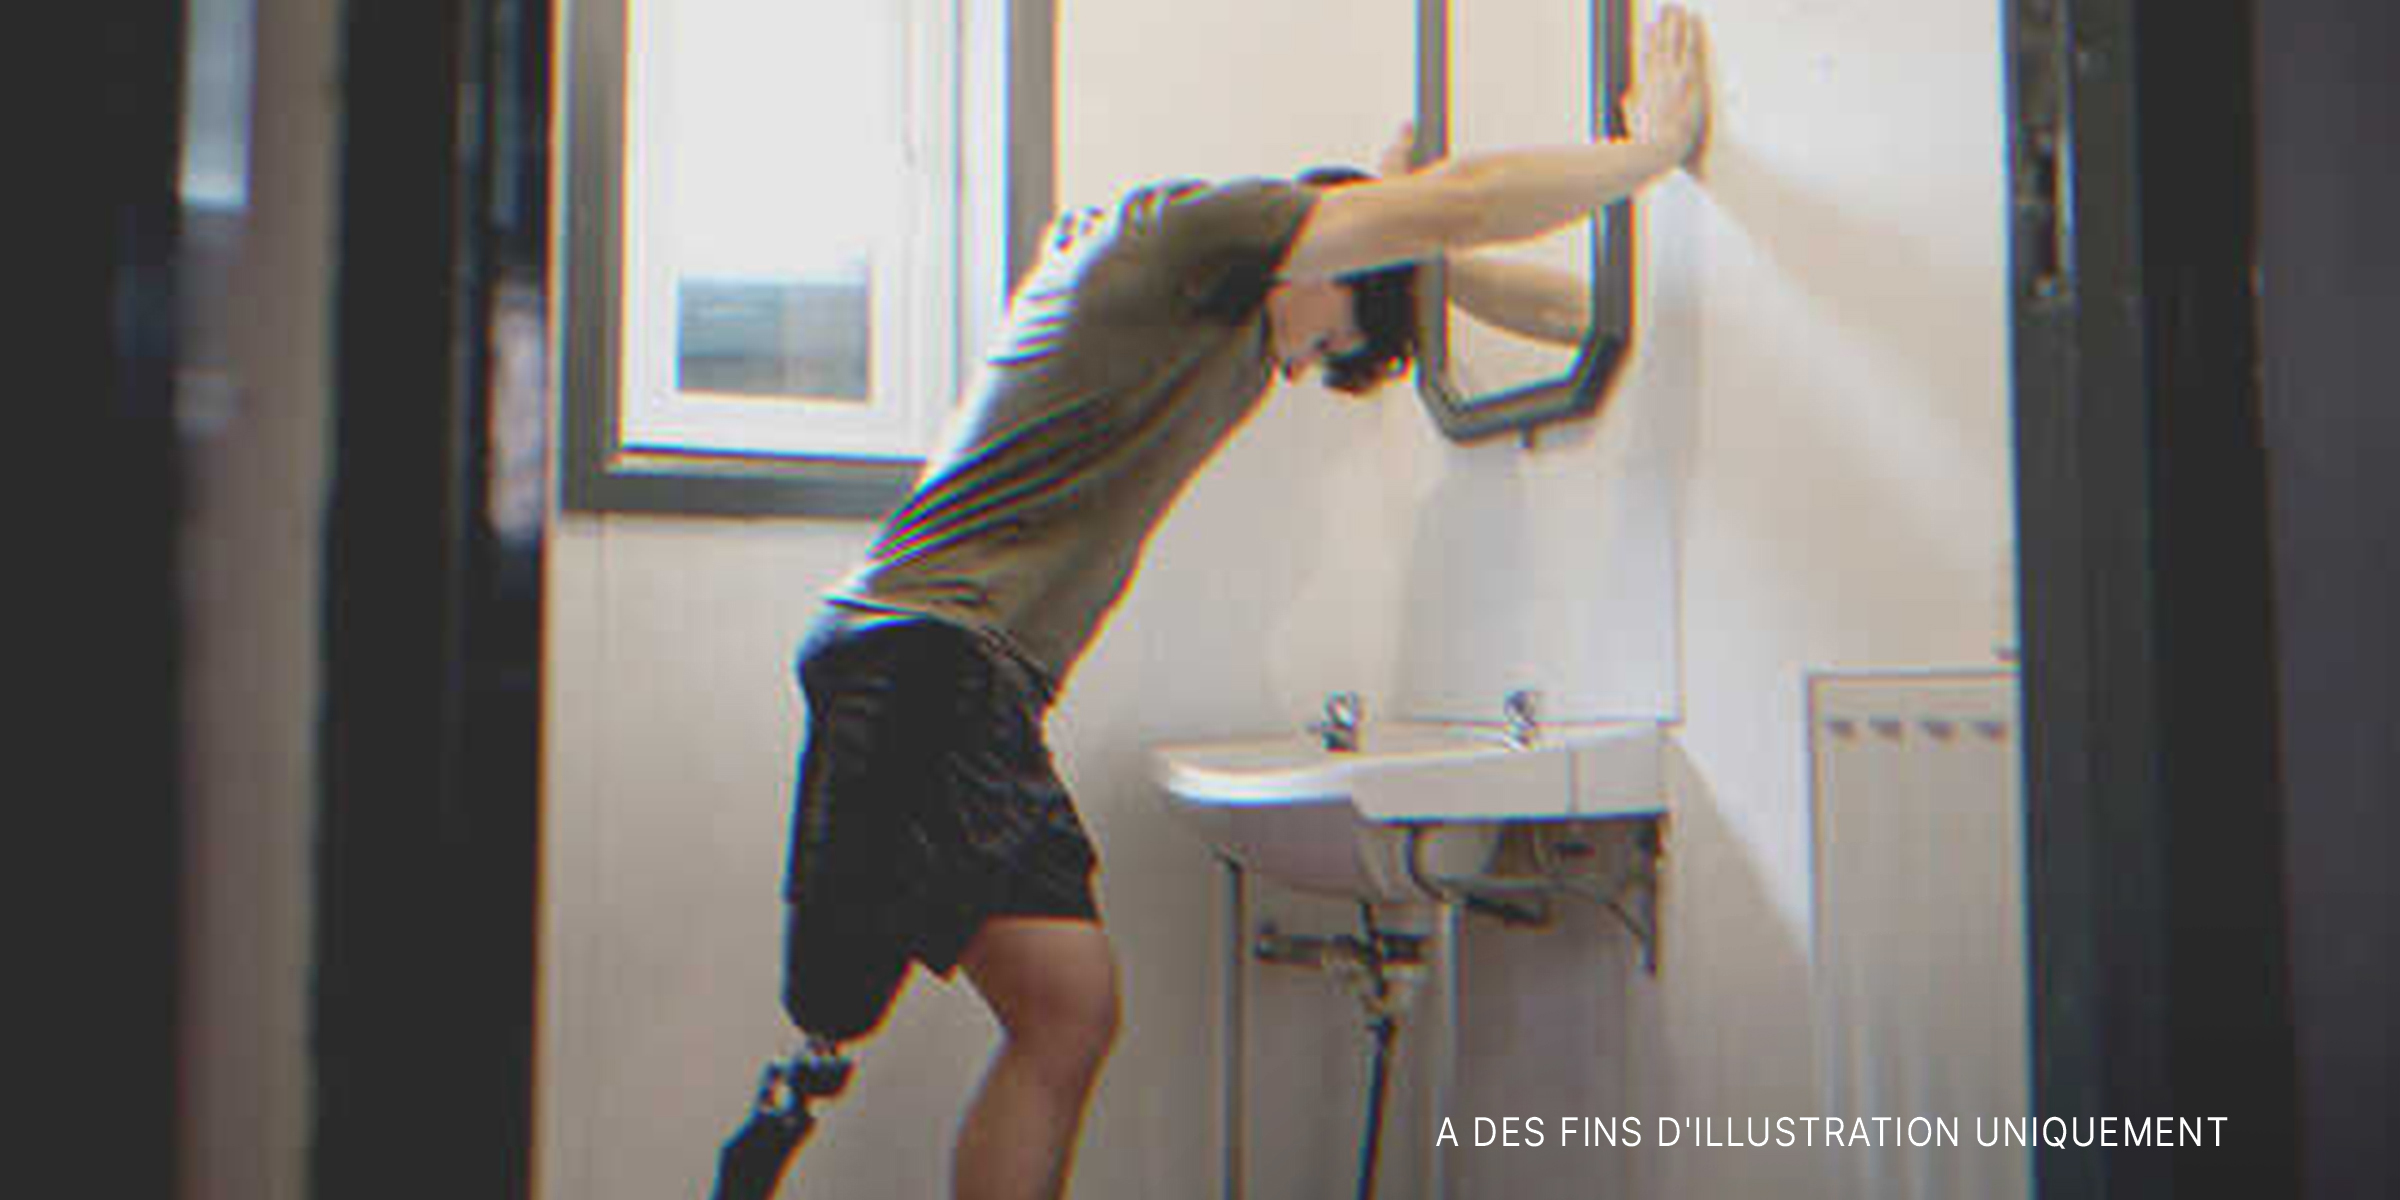 Garçon avec une prothèse de jambe dans une salle de bain | Source : Getty Images